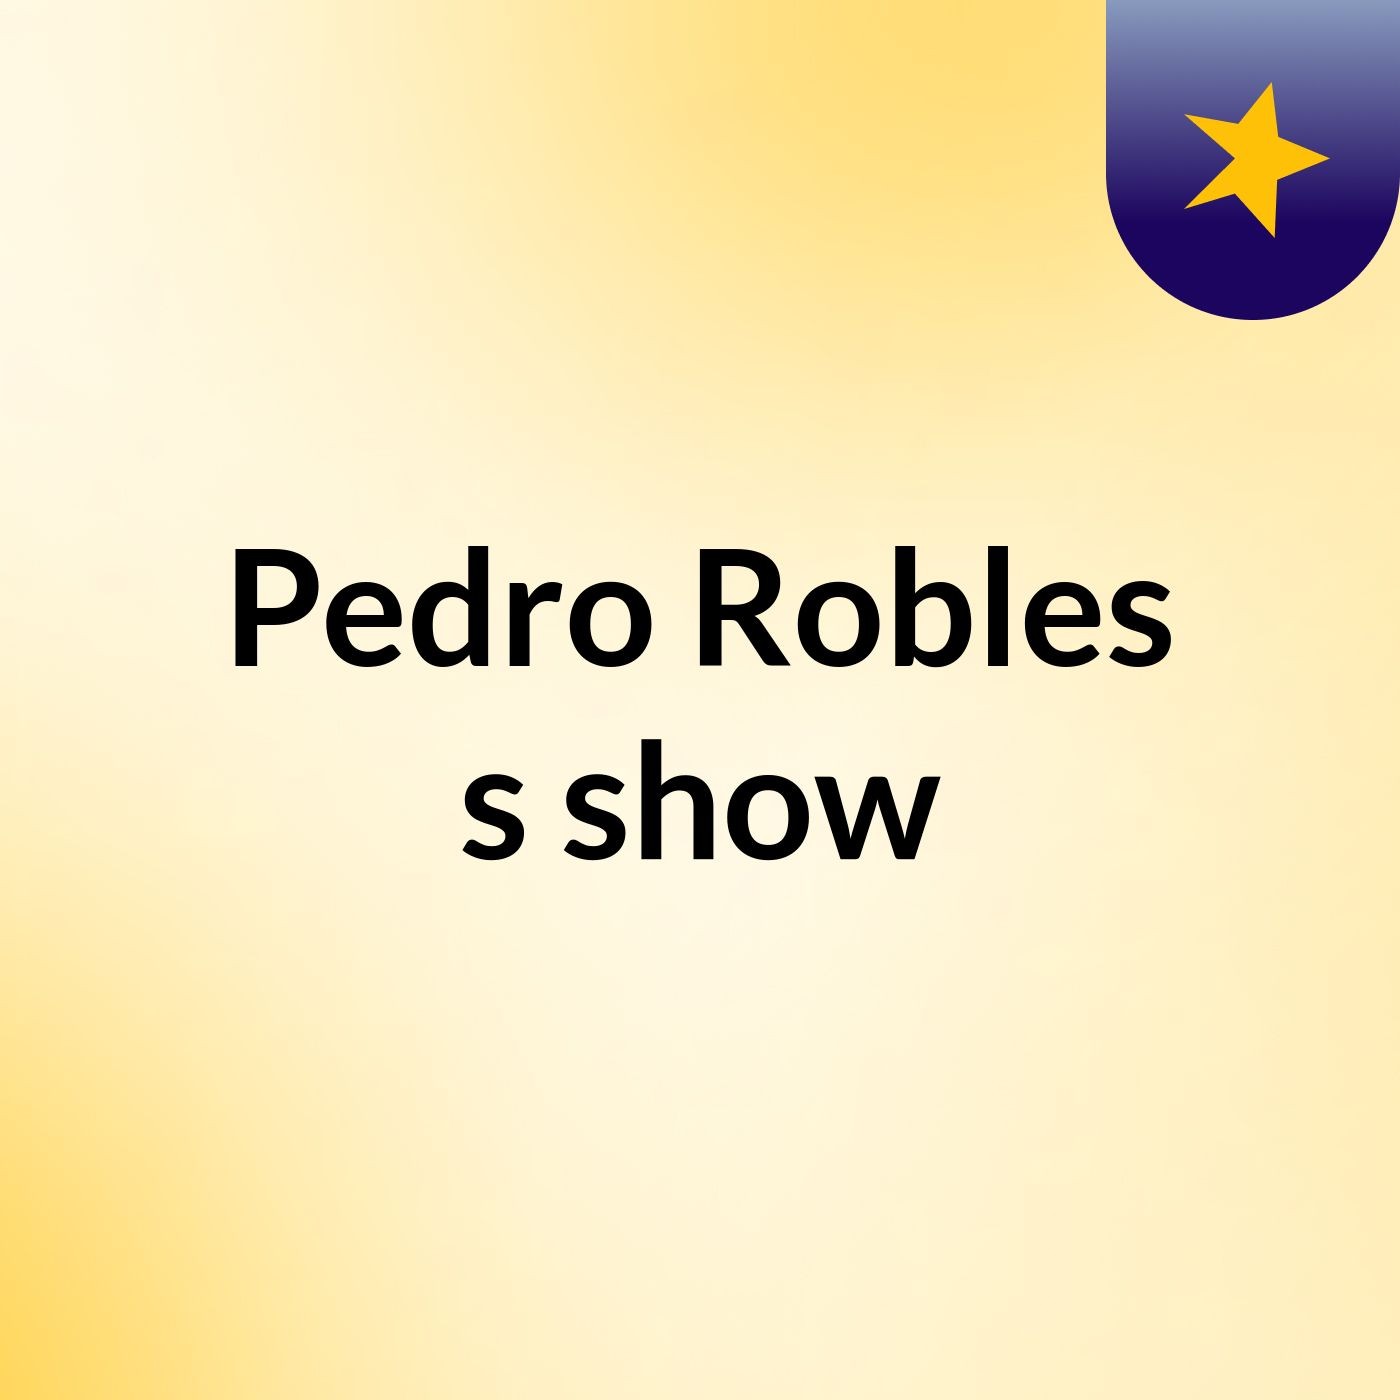 Pedro Robles's show